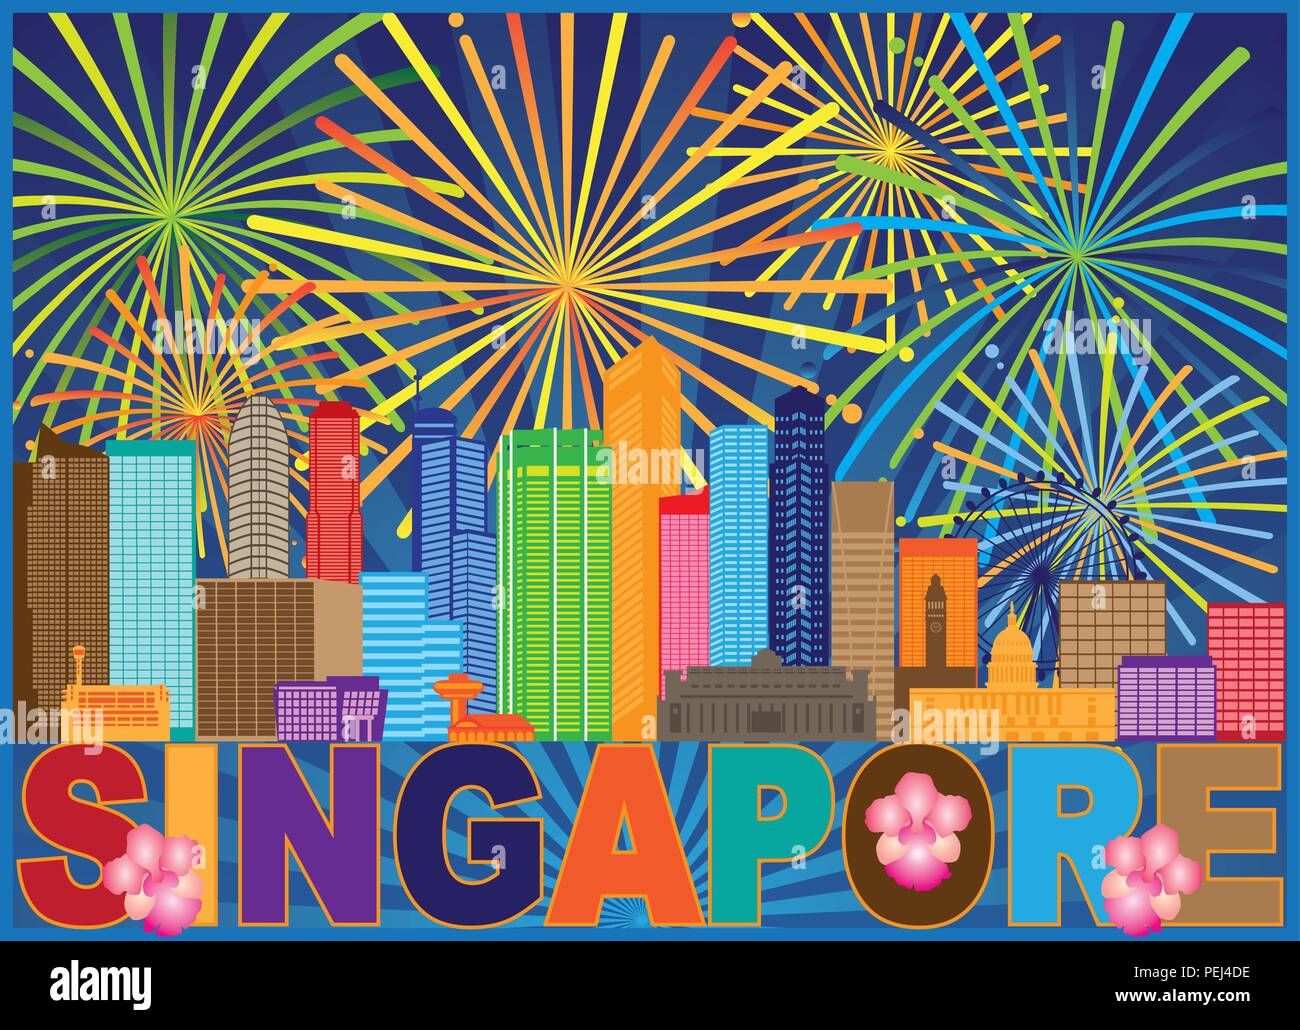 Singapur Skyline der Stadt Silhouette Übersicht Panorama Feuerwerk Text Farbe Hintergrund Abbildung Stock Vektor